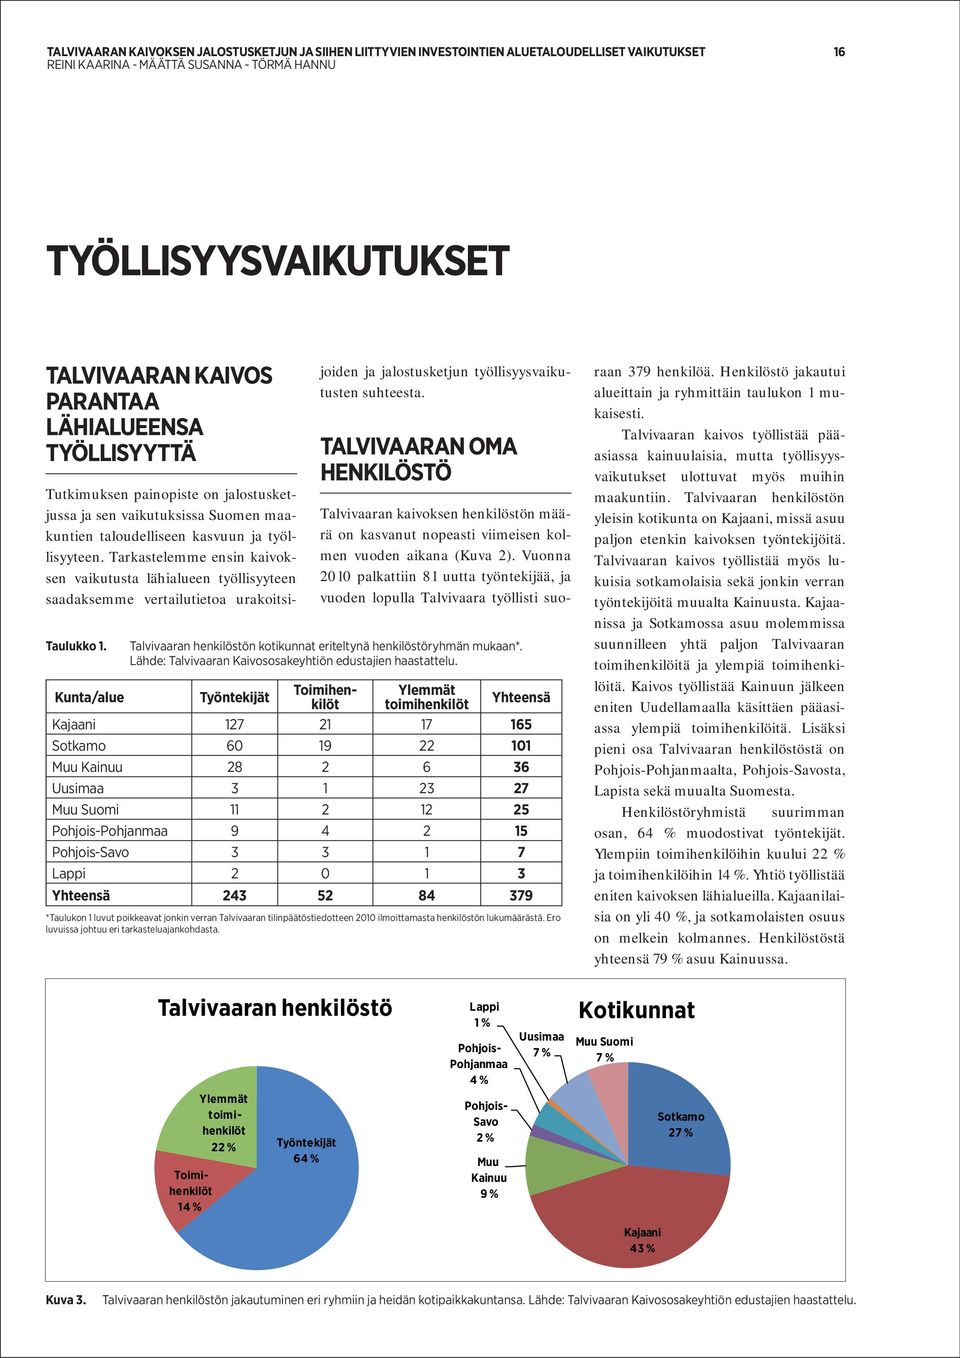 Tutkimuksen painopiste on jalostusketjussa ja sen vaikutuksissa Suomen maakuntien taloudelliseen kasvuun ja työllisyyteen.